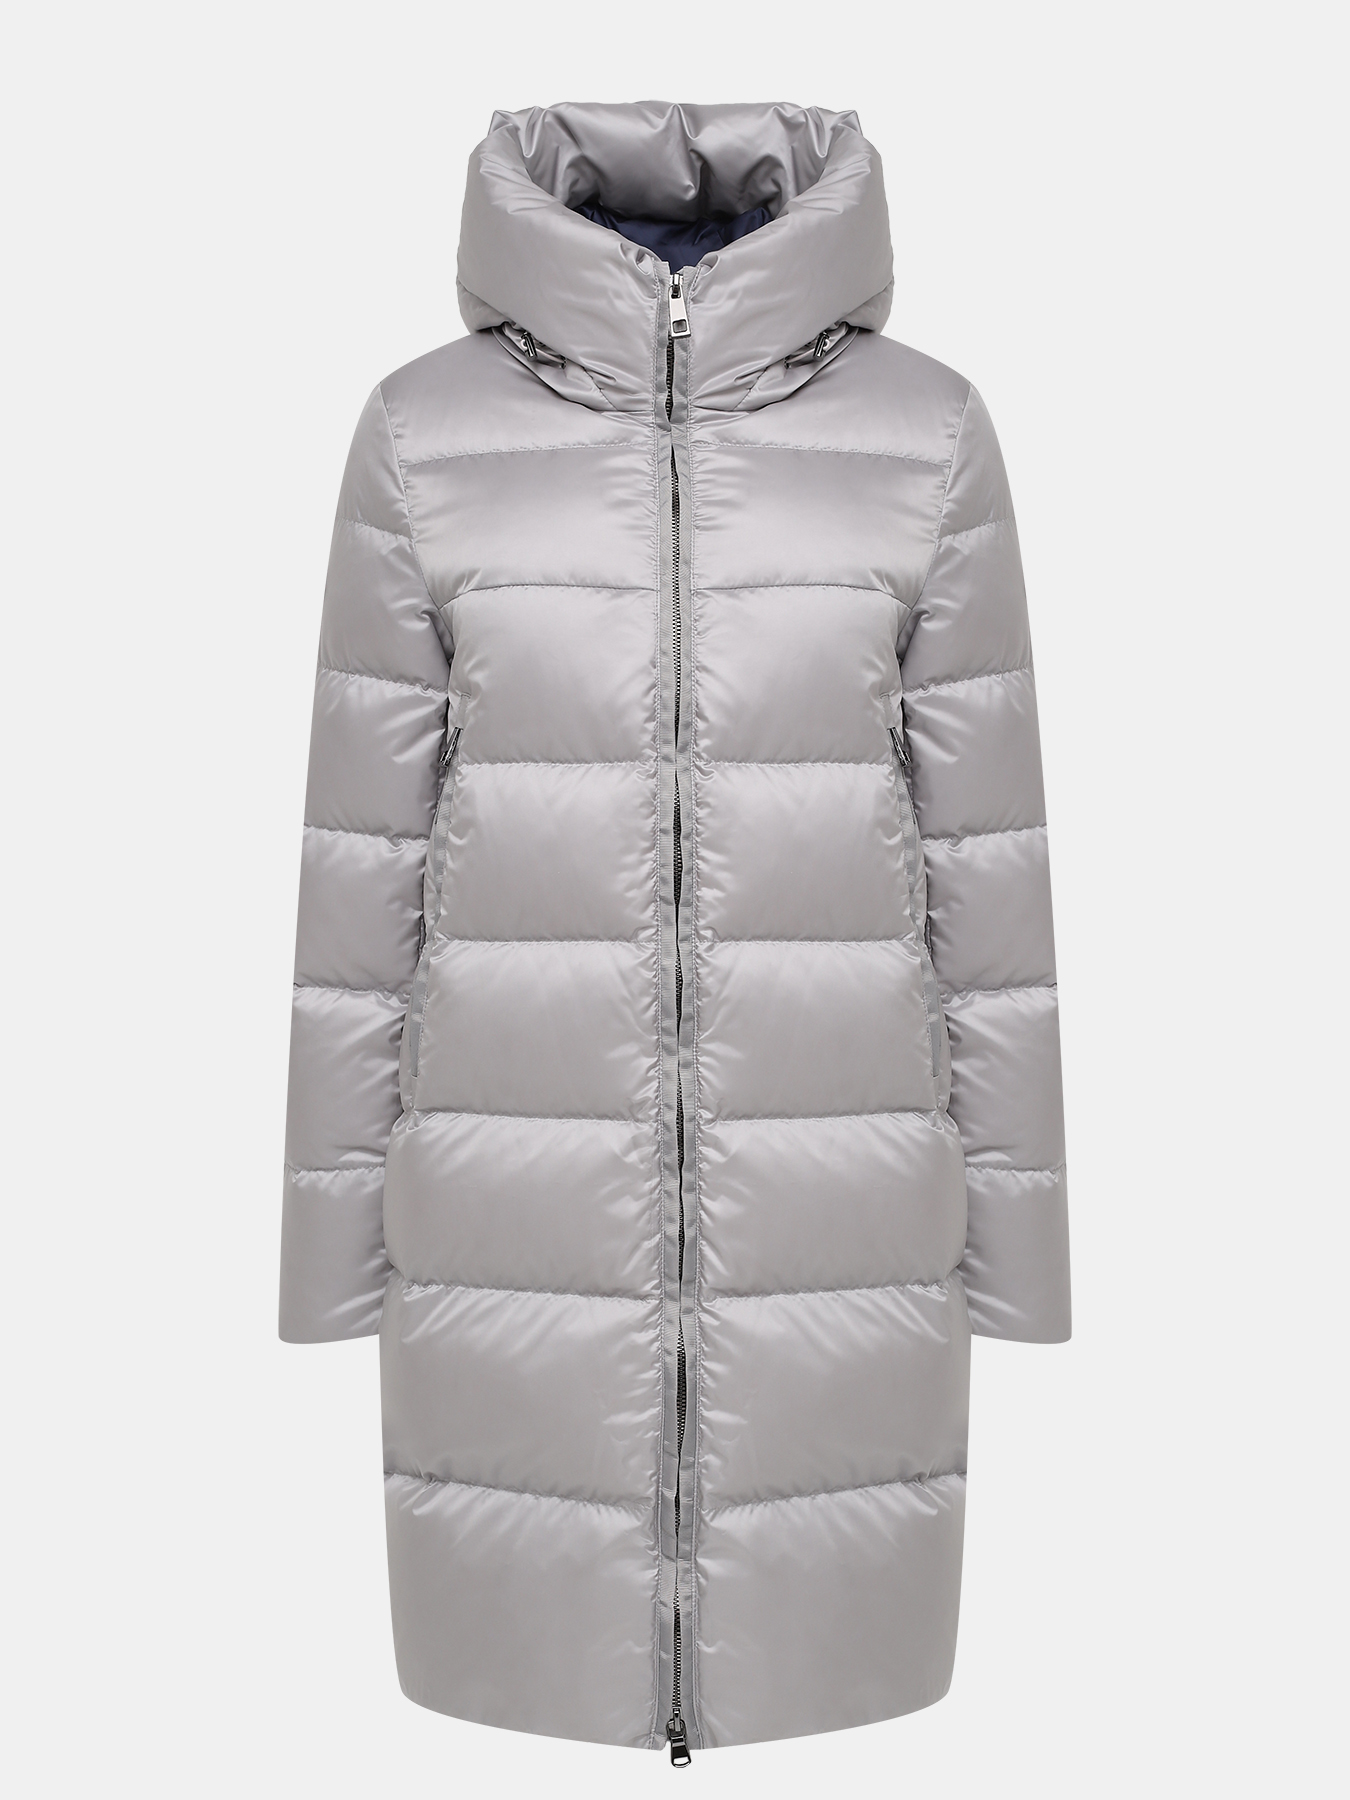 Пальто зимнее AVI 433618-024, цвет серый, размер 52